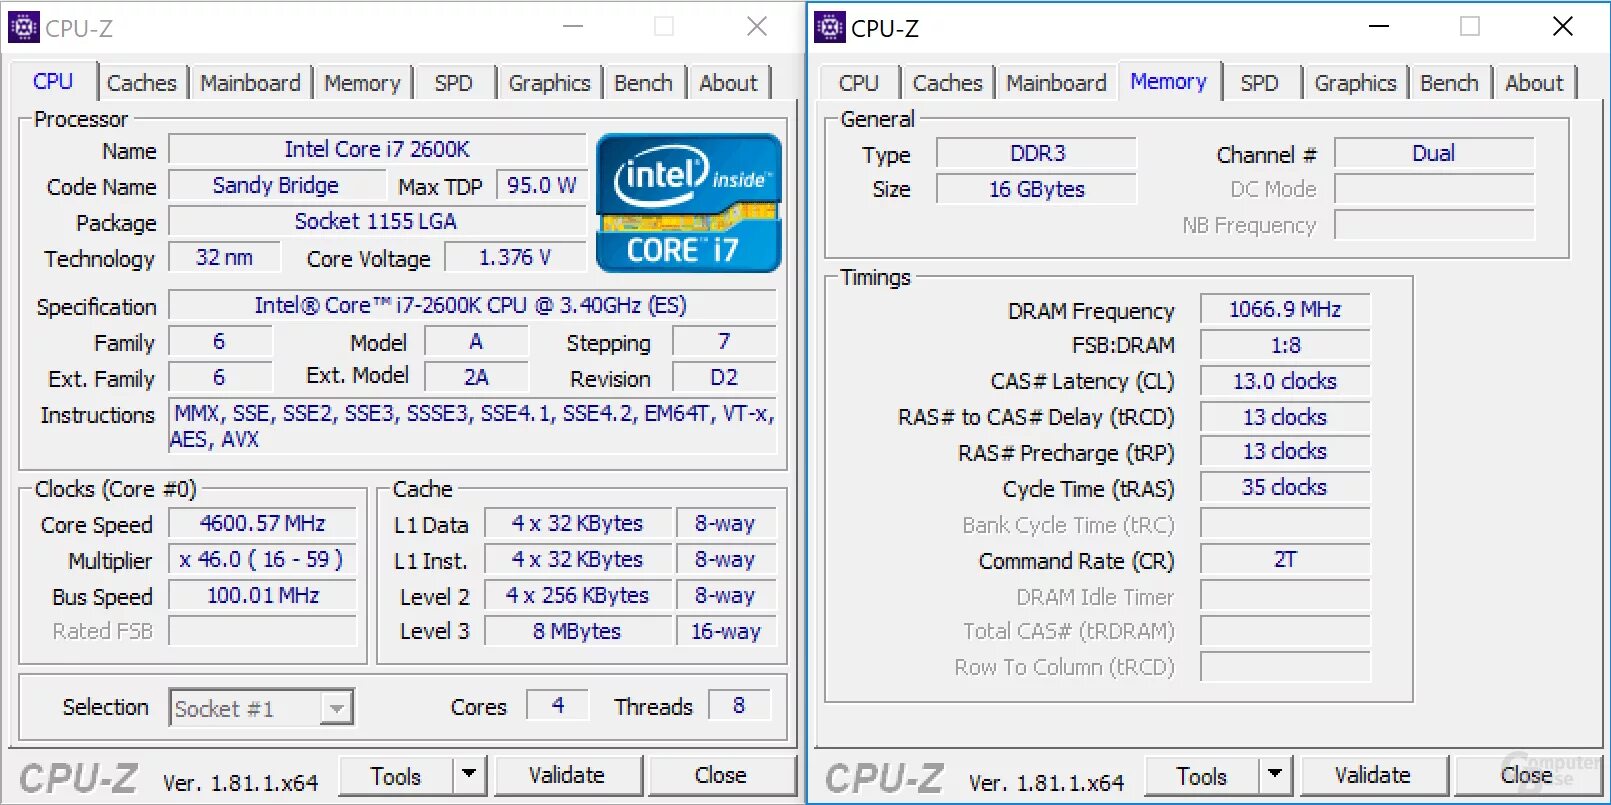 CPU-Z Core i3 2120. I5 3570 CPU Z. Core i5-12400 CPU-Z. I7 2600k CPU Z Benchmark.